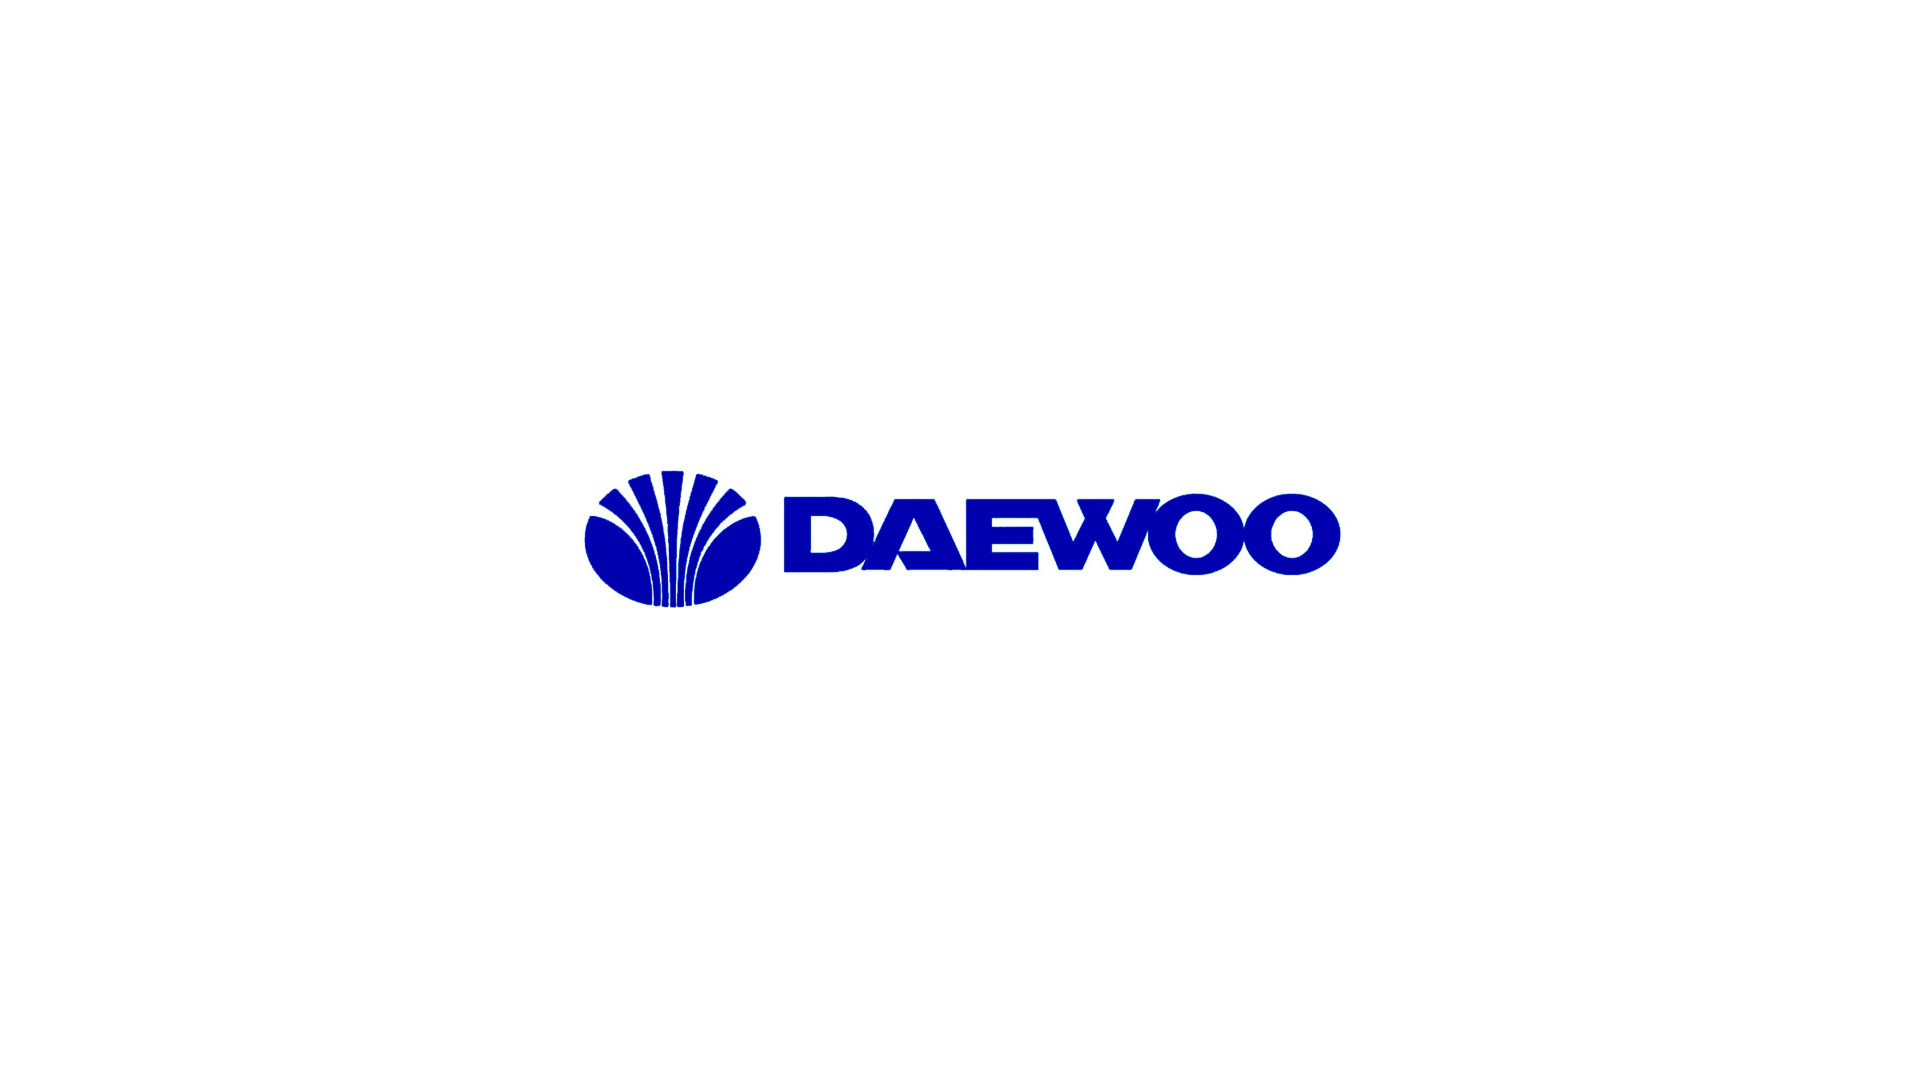 Логотип Daewoo: значение эмблемы на автомобилях Дэу